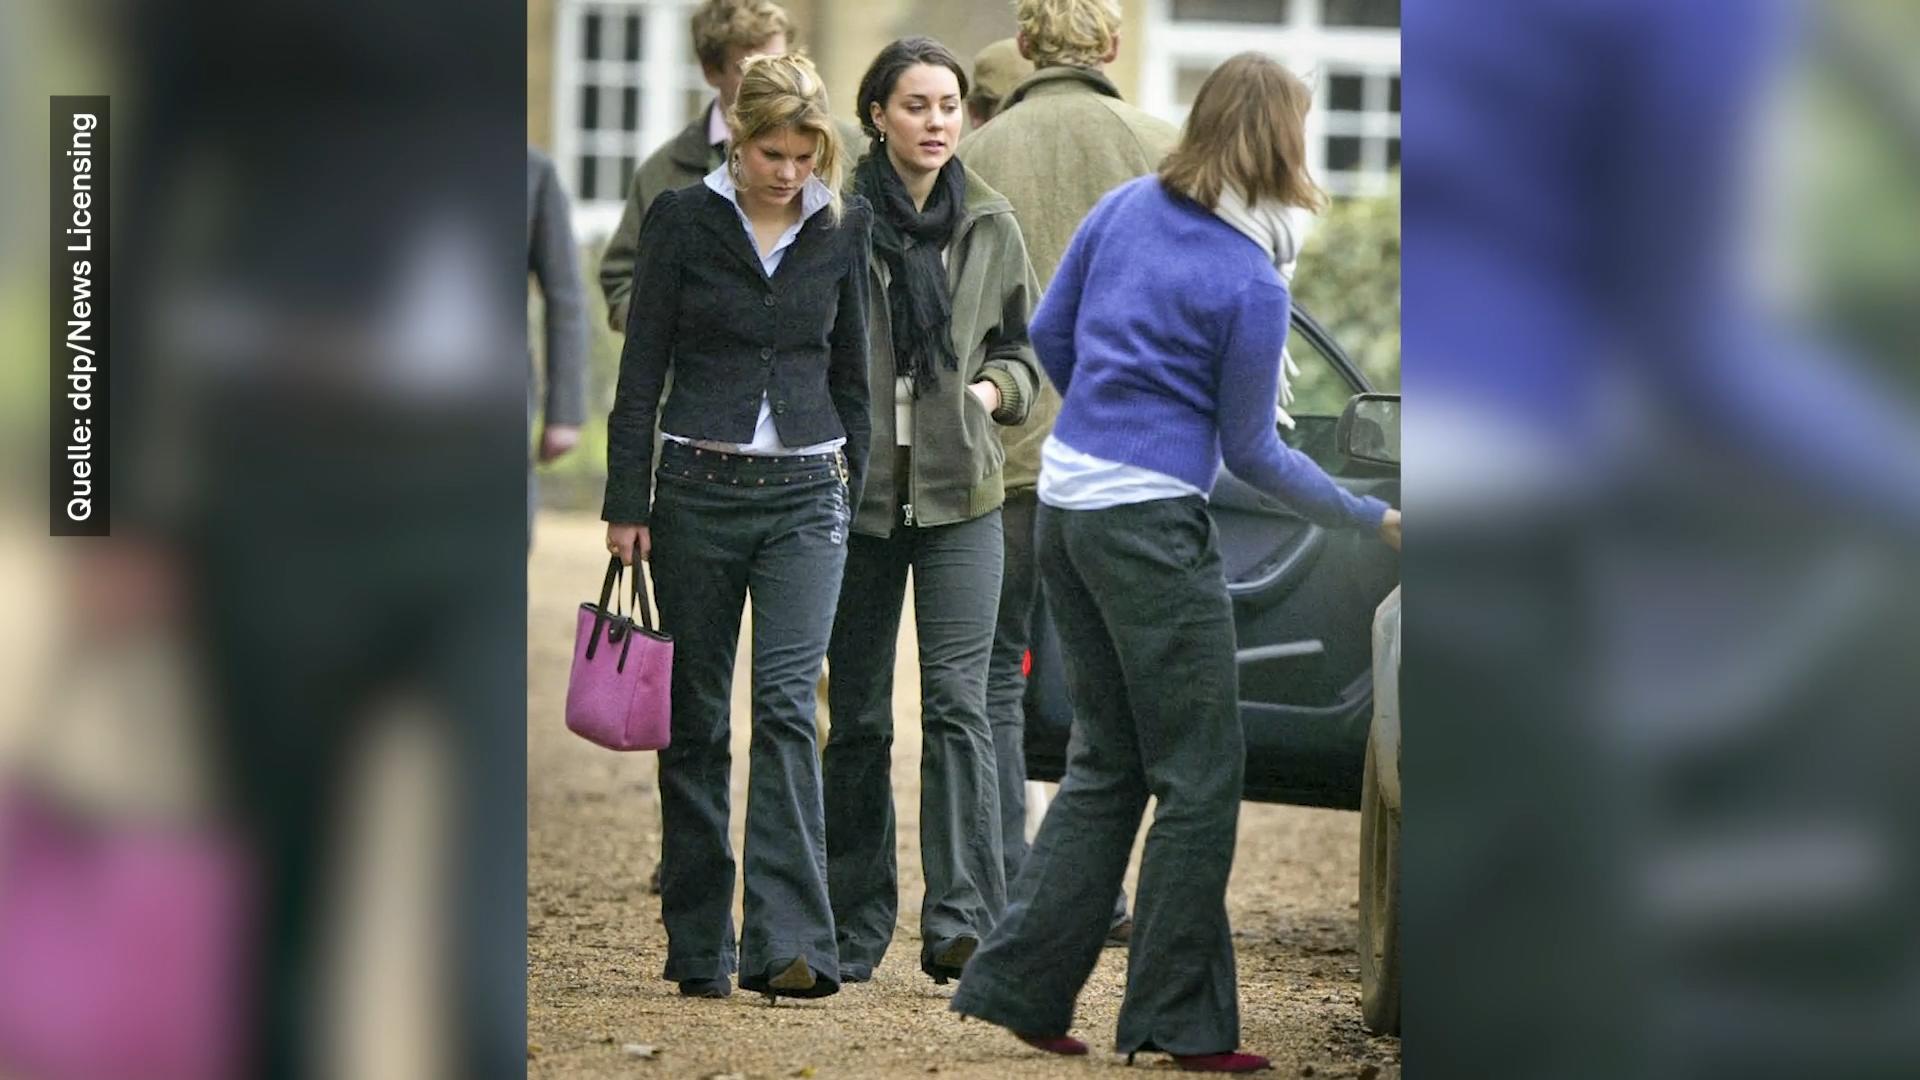 Herzogin Kate war früher eine graue Maus Studi-Foto von 2005 aufgetaucht